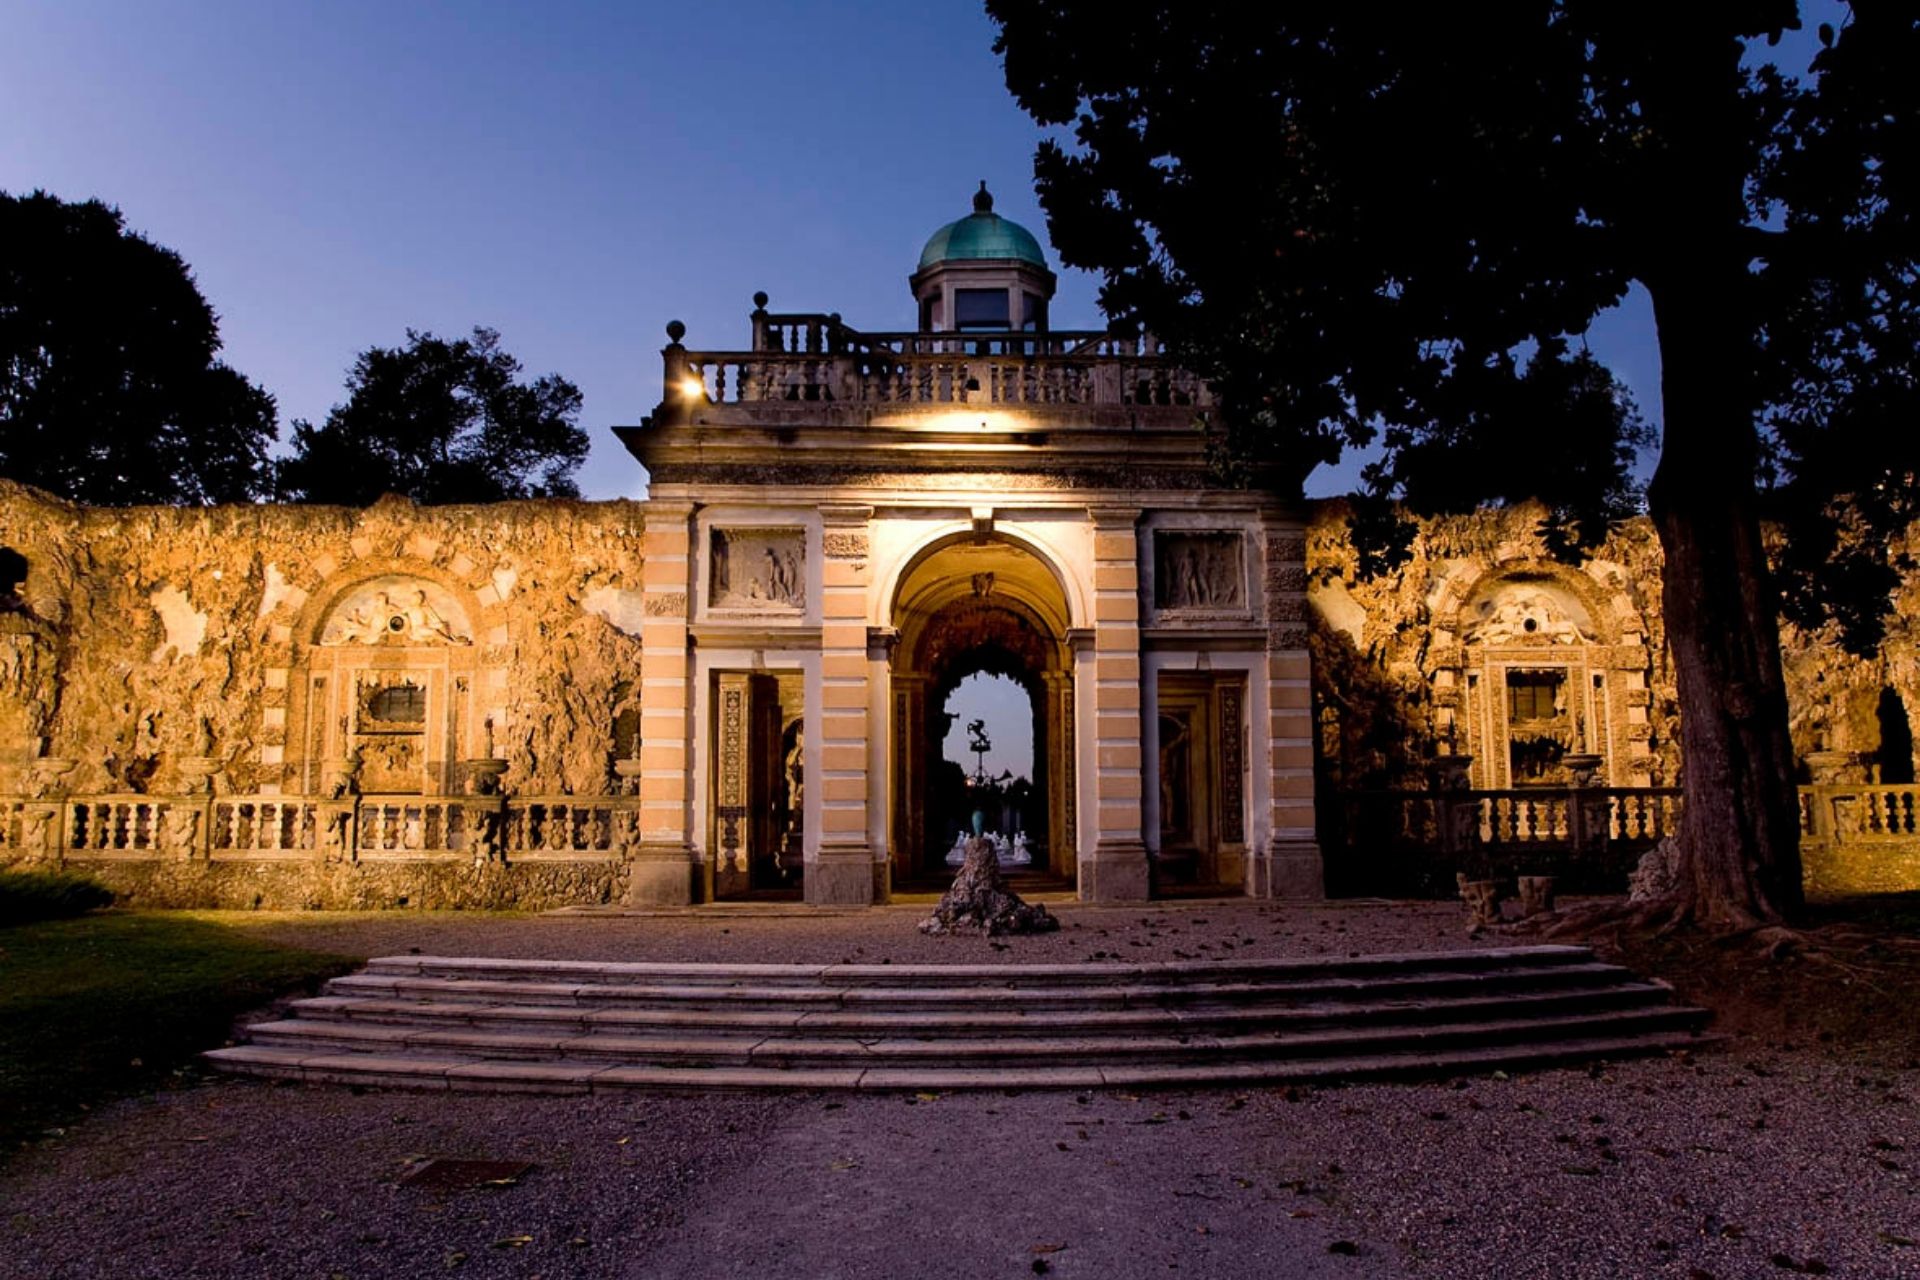 Villa Litta Borromeo